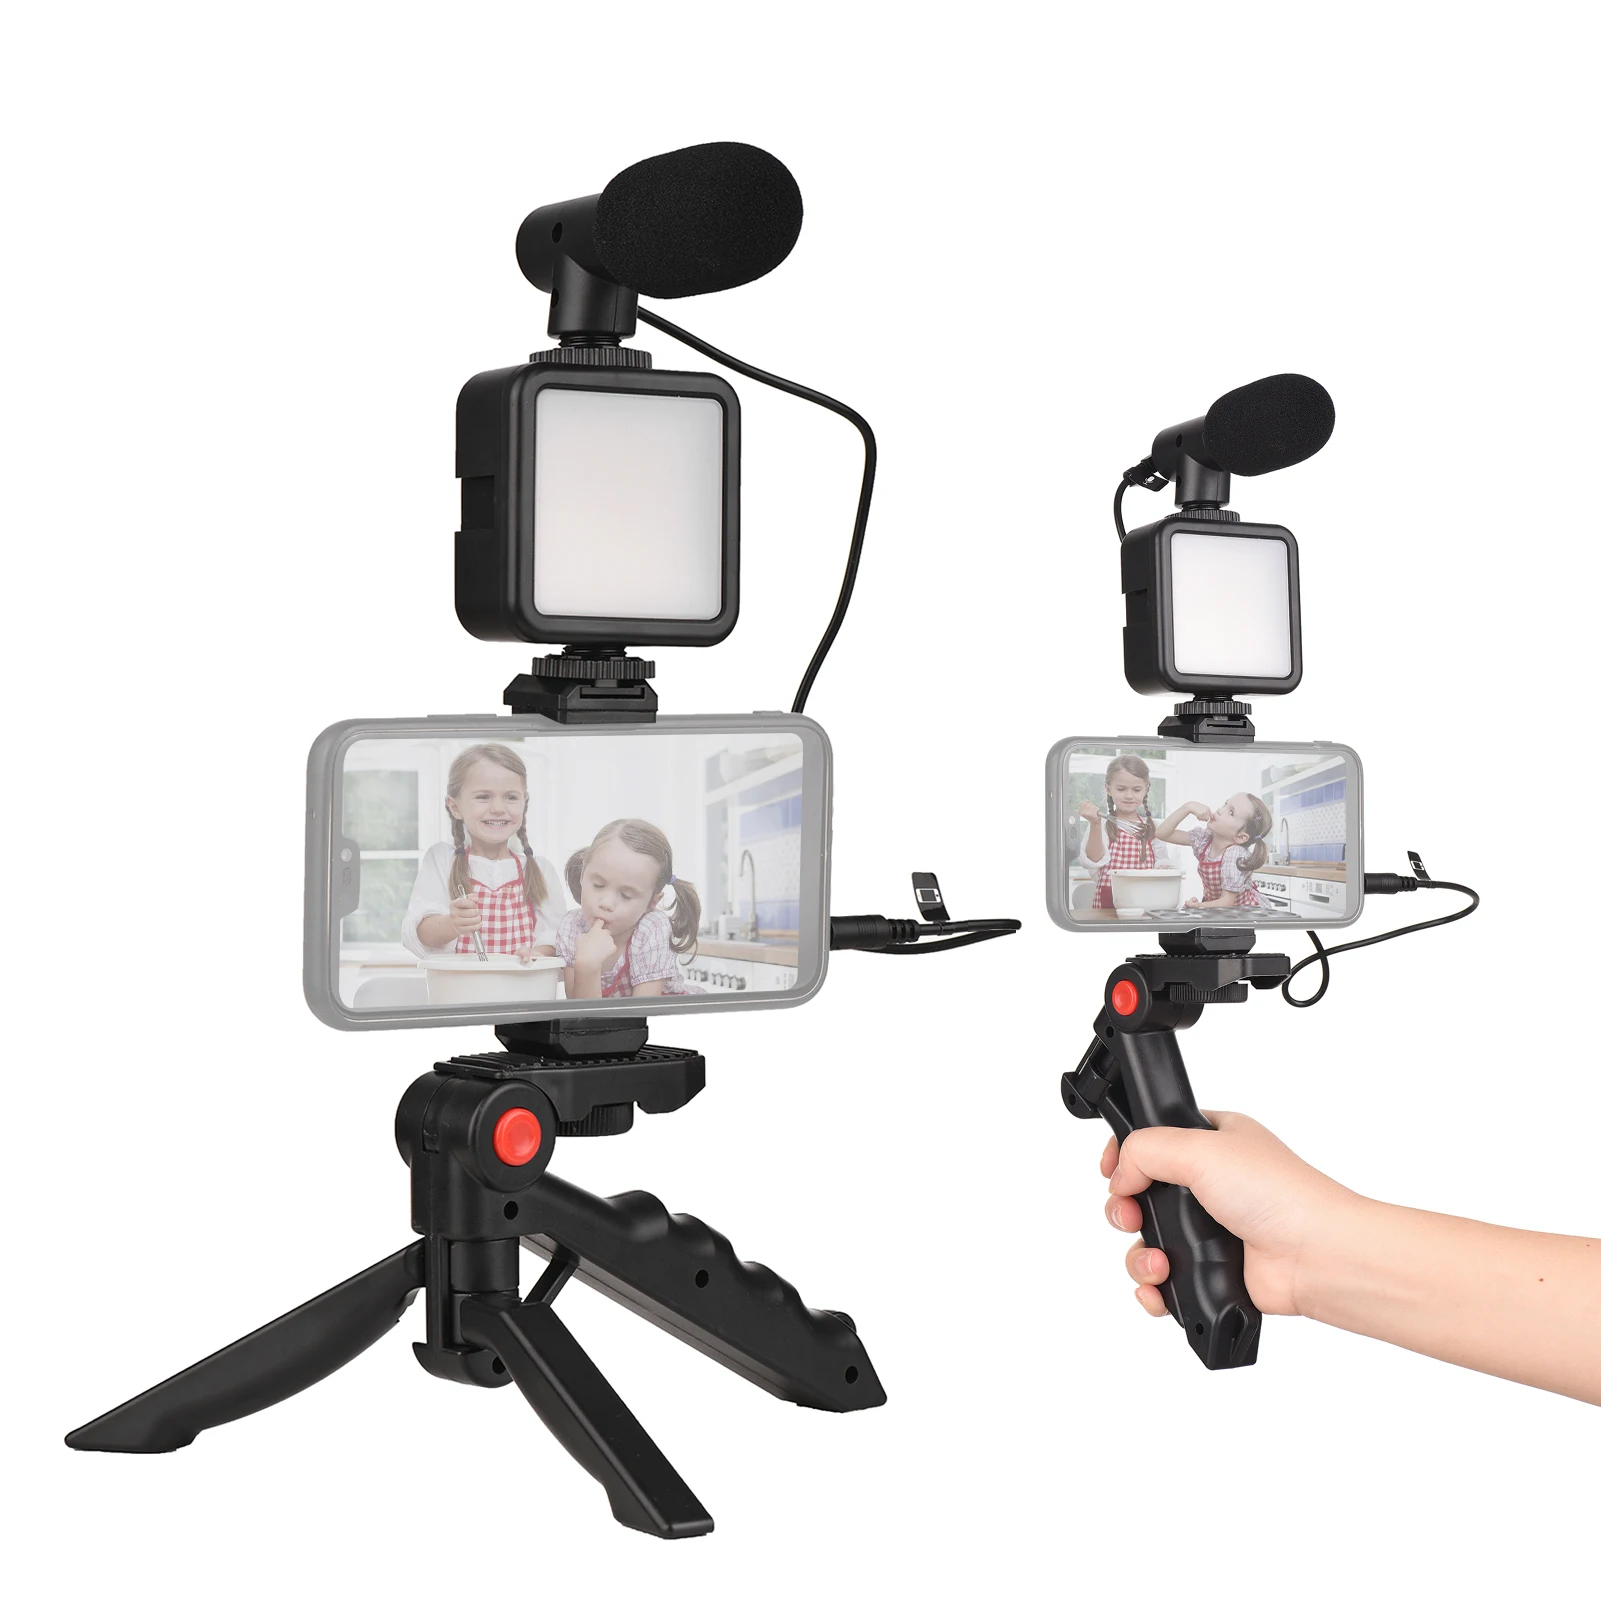 Комплект Видеоблога для смартфона Mini LED Video Light + Кардиоидный Микрофон + Выдвижной Зажим Для Телефона + Штатив для Видеосъемки в Прямом эфире